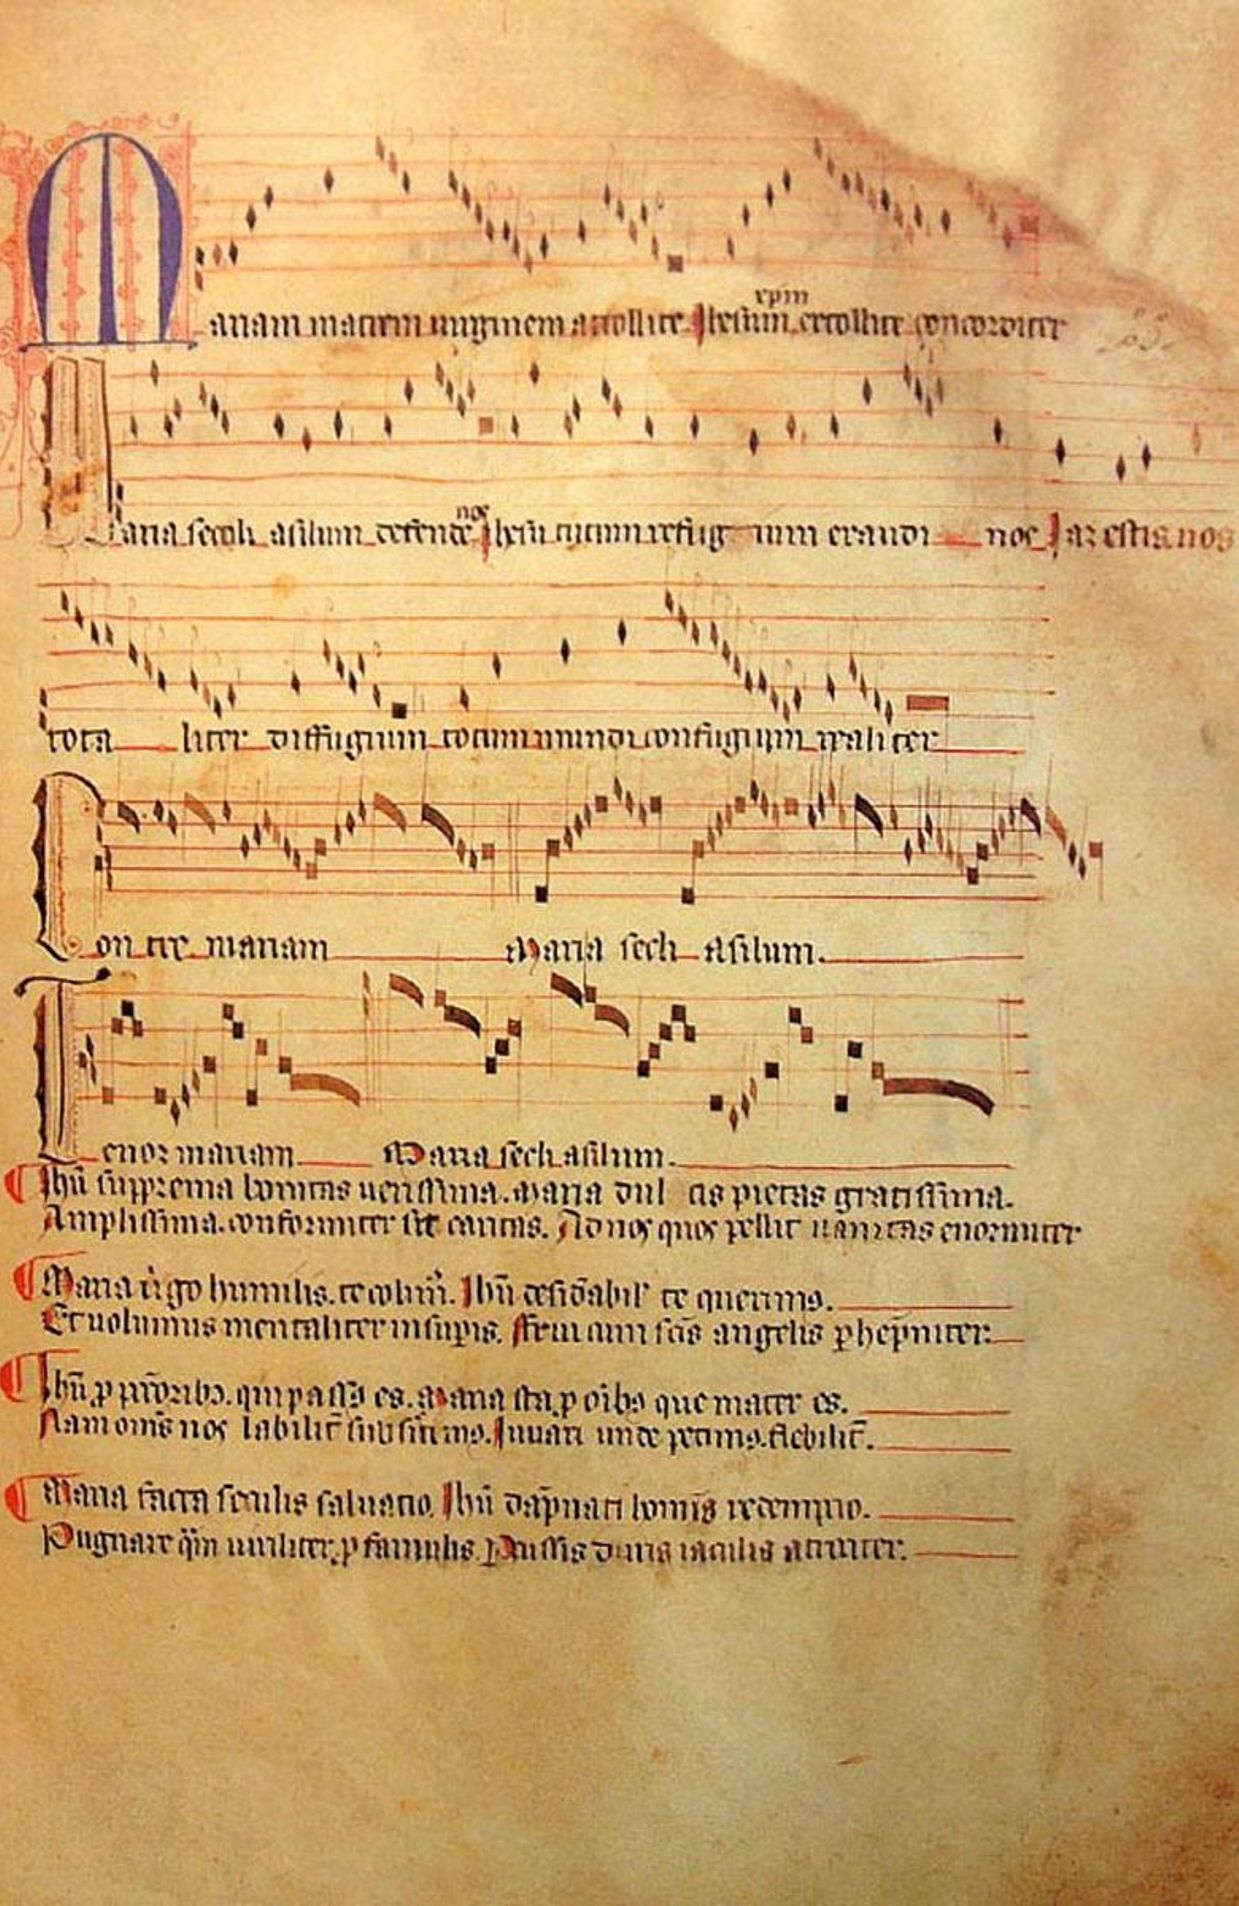 Le cantique Mariam matrem virginem, une page du Livre vermeil de Montserrat.